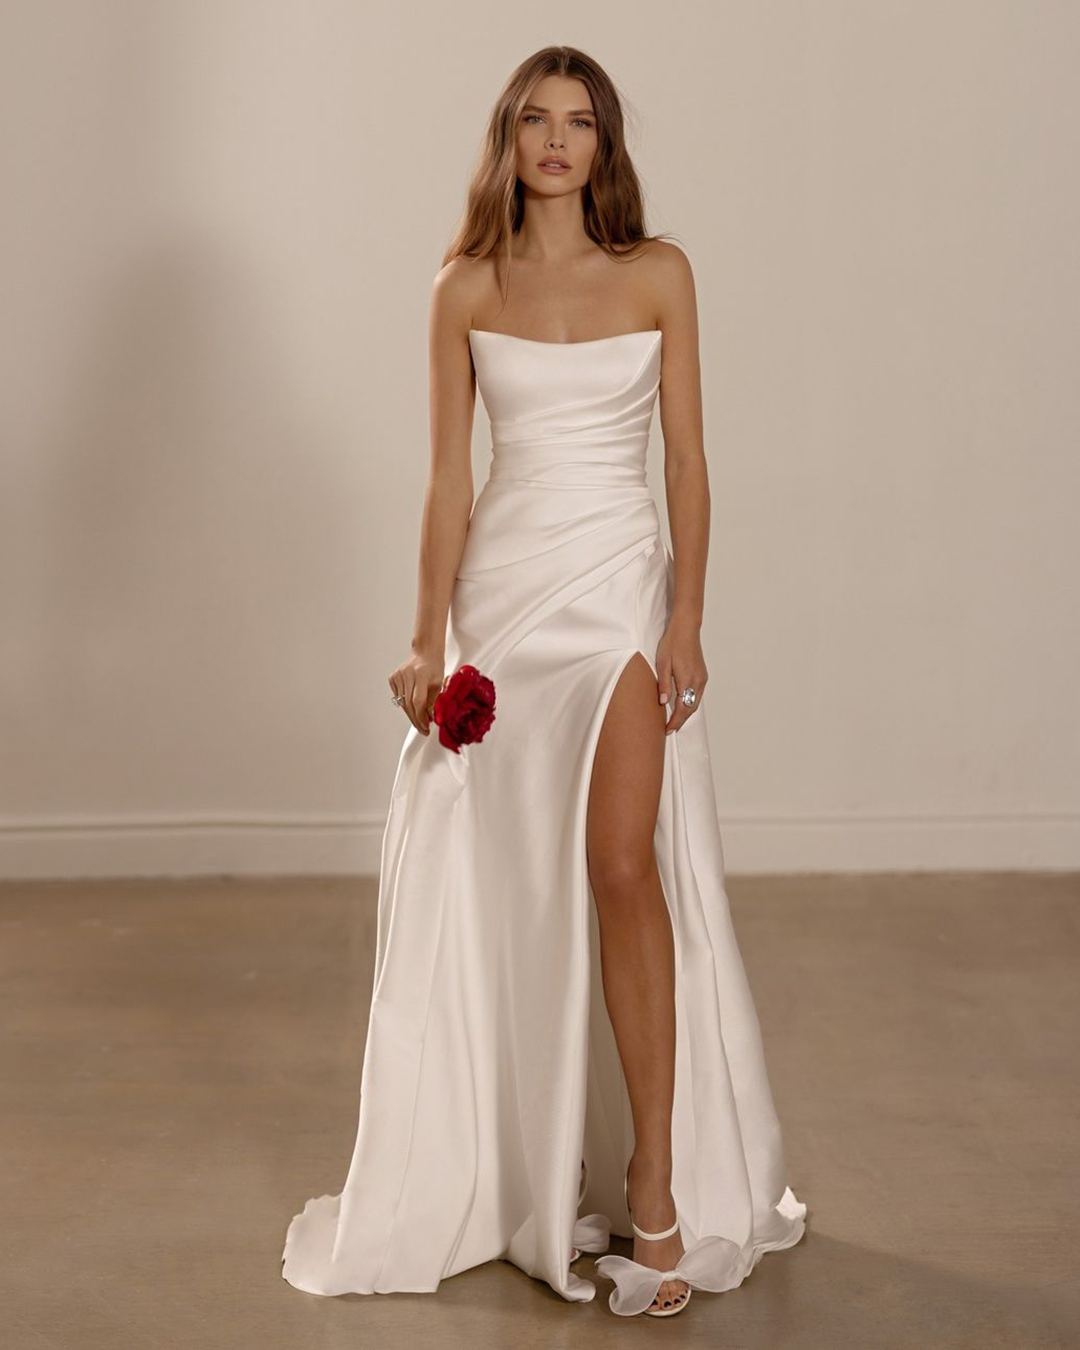 Váy cưới phi trơn đơn giản, thanh lịch | Kiểu váy cưới, Áo váy, Trang phục  trang trọng